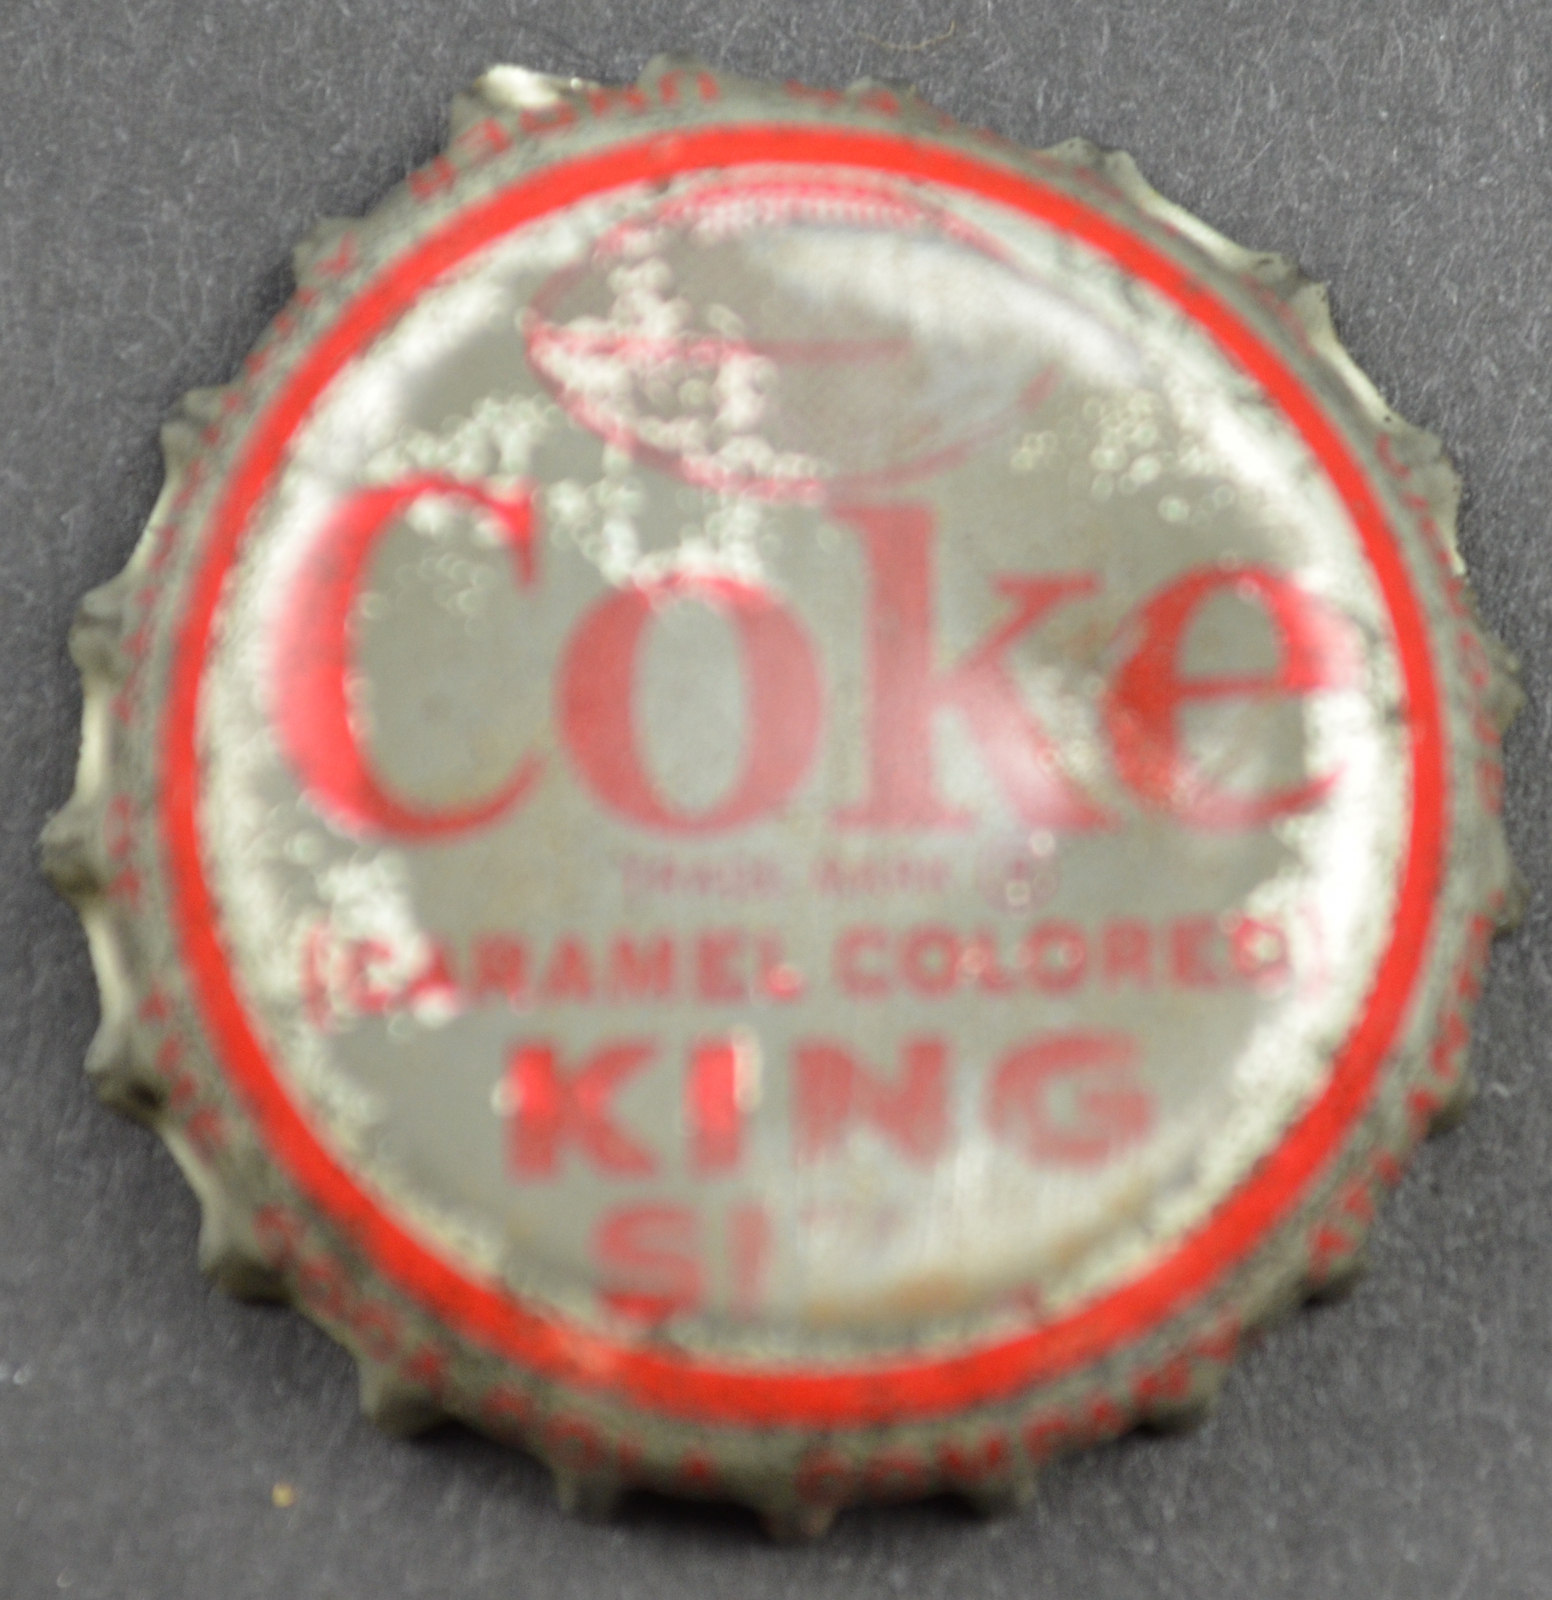 Coca Cola NFL Bottle Cap - Cleveland Browns - Galen Fiss - Coke King Size